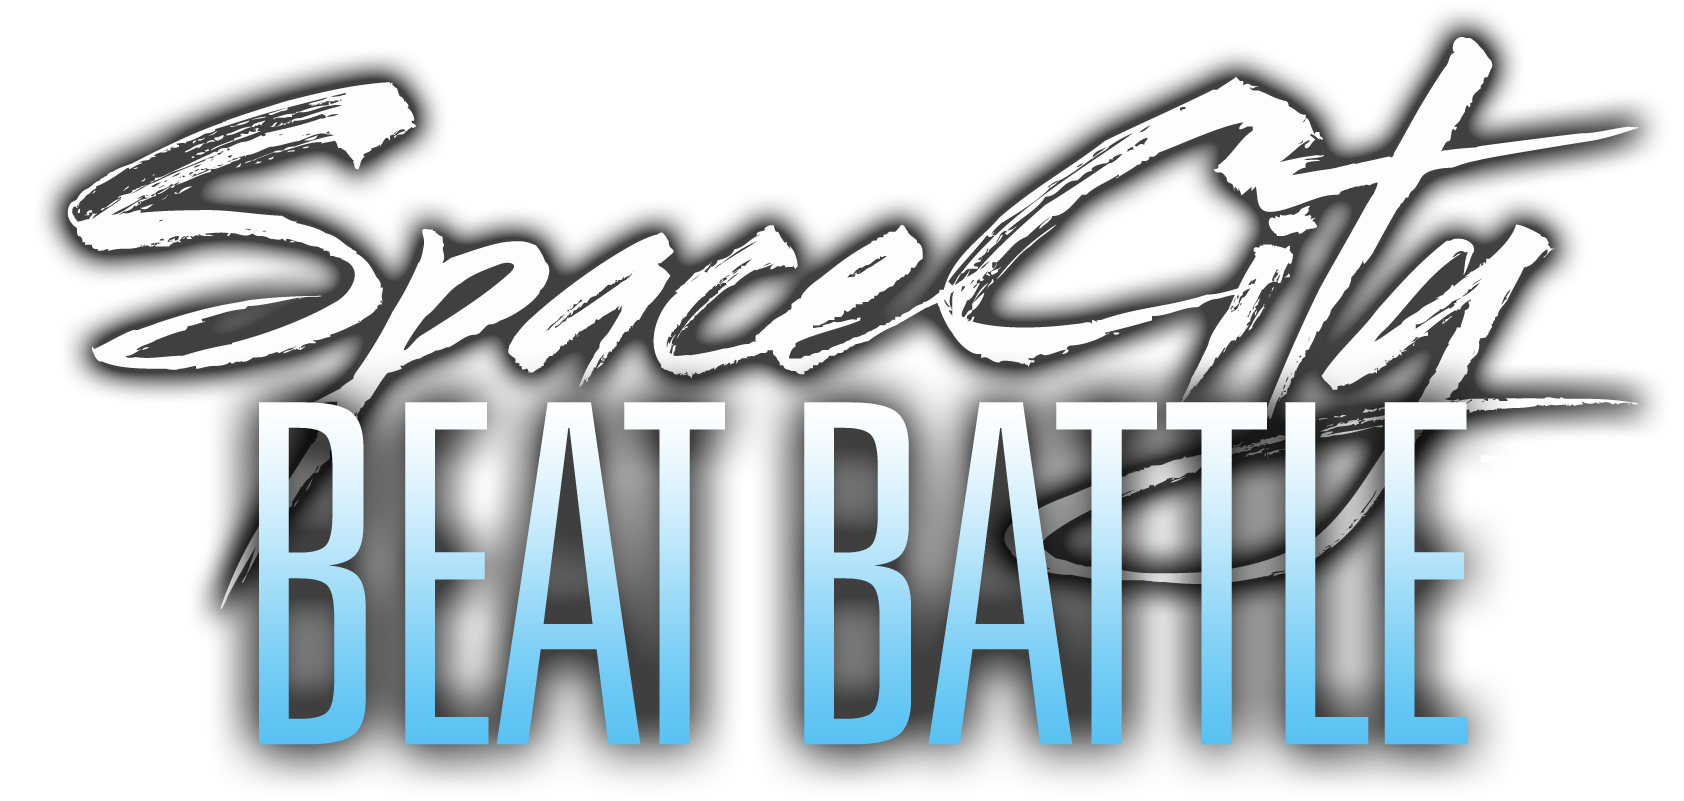 SpaceCity Beat Battle XI